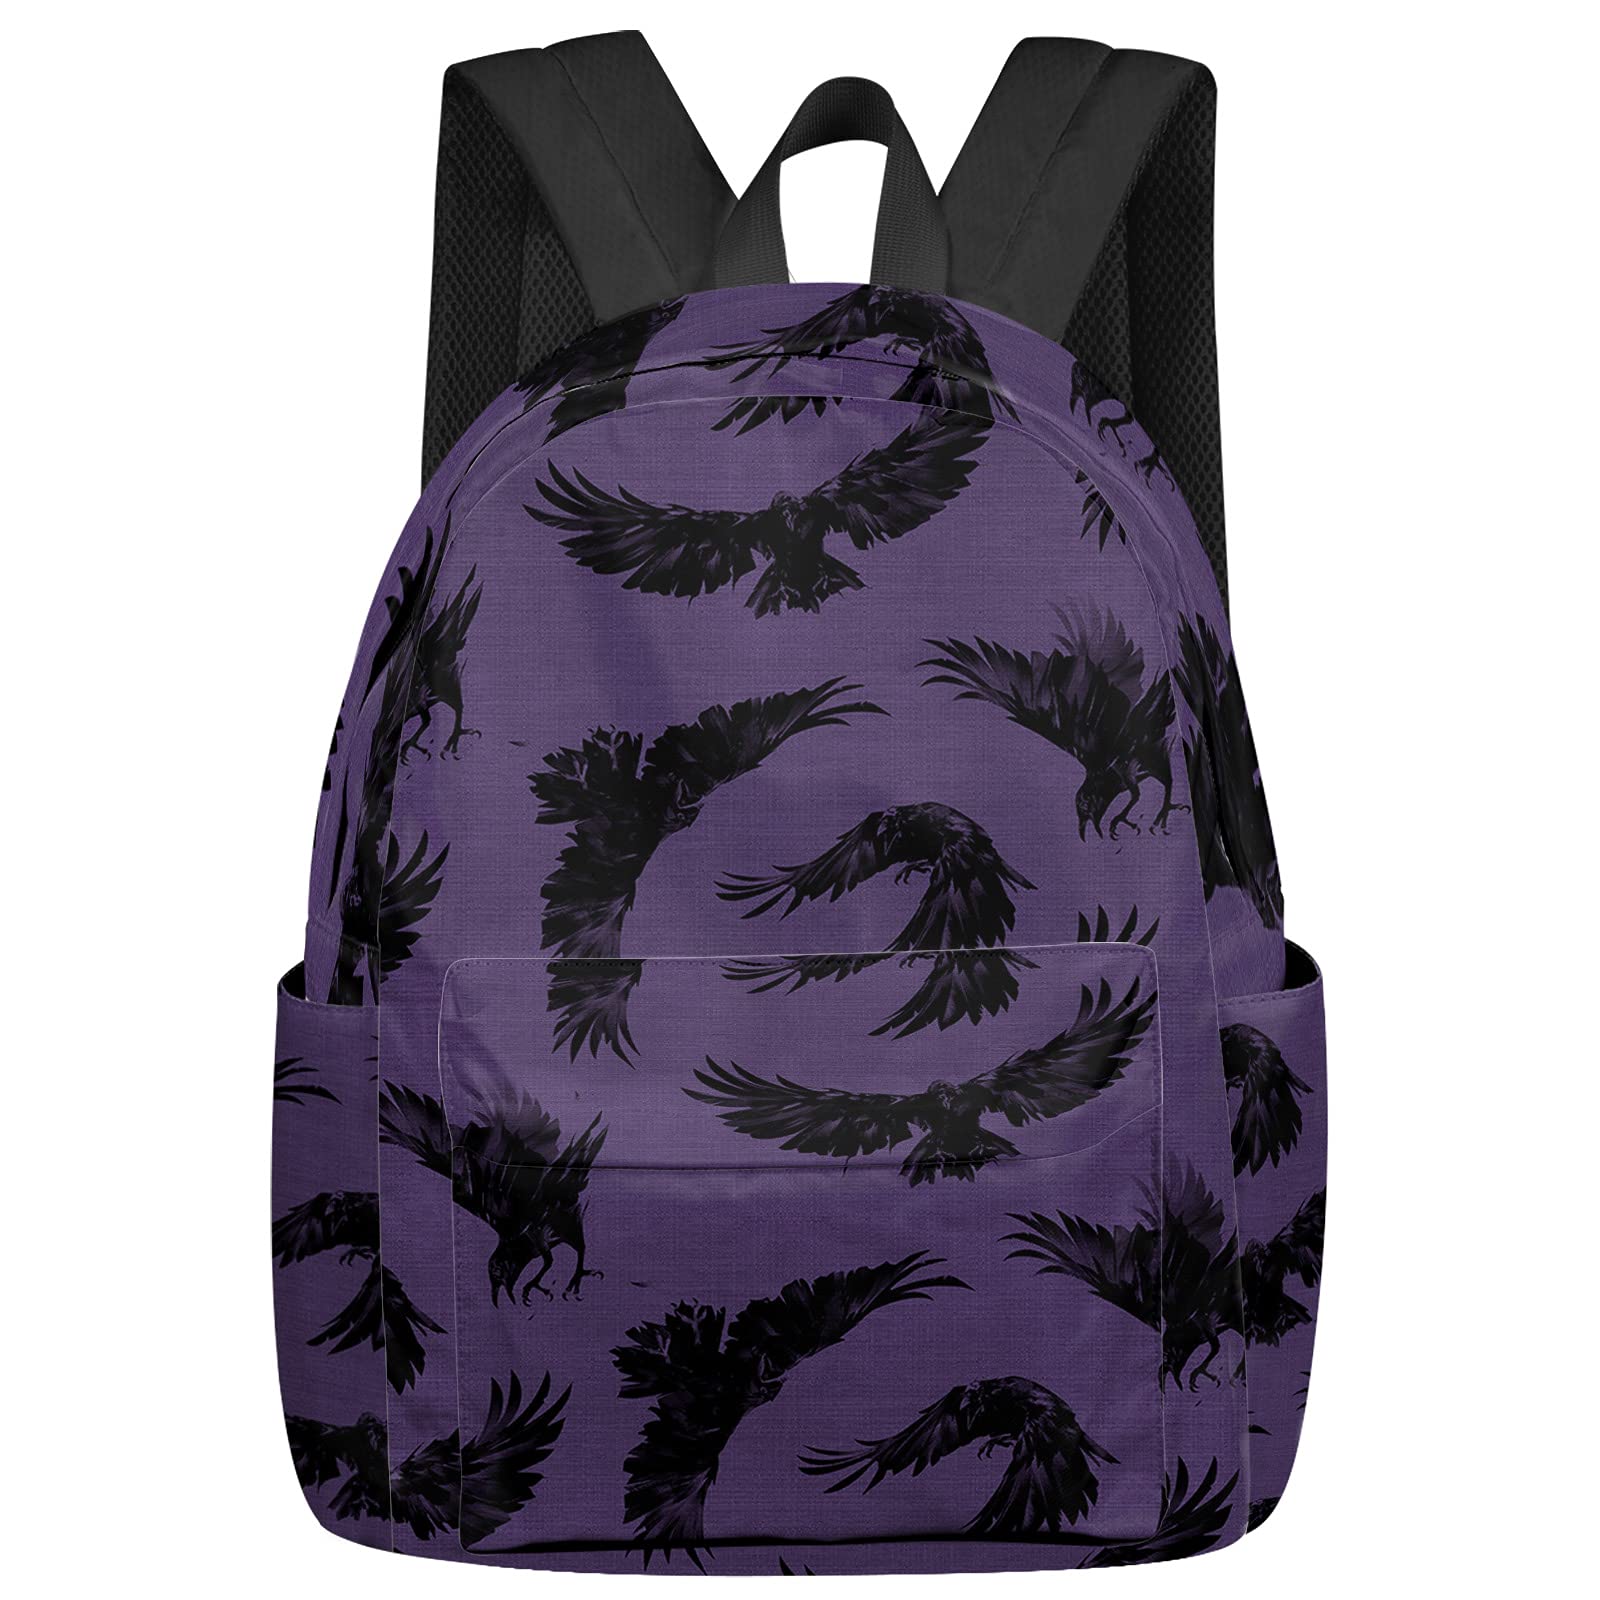 Lässiger Rucksack mit schwarzem Raben, Krähen, Schulbüchertasche, violetter Hintergrund, langlebig, für Reisen, Wandern, Camping, Tagesrucksack